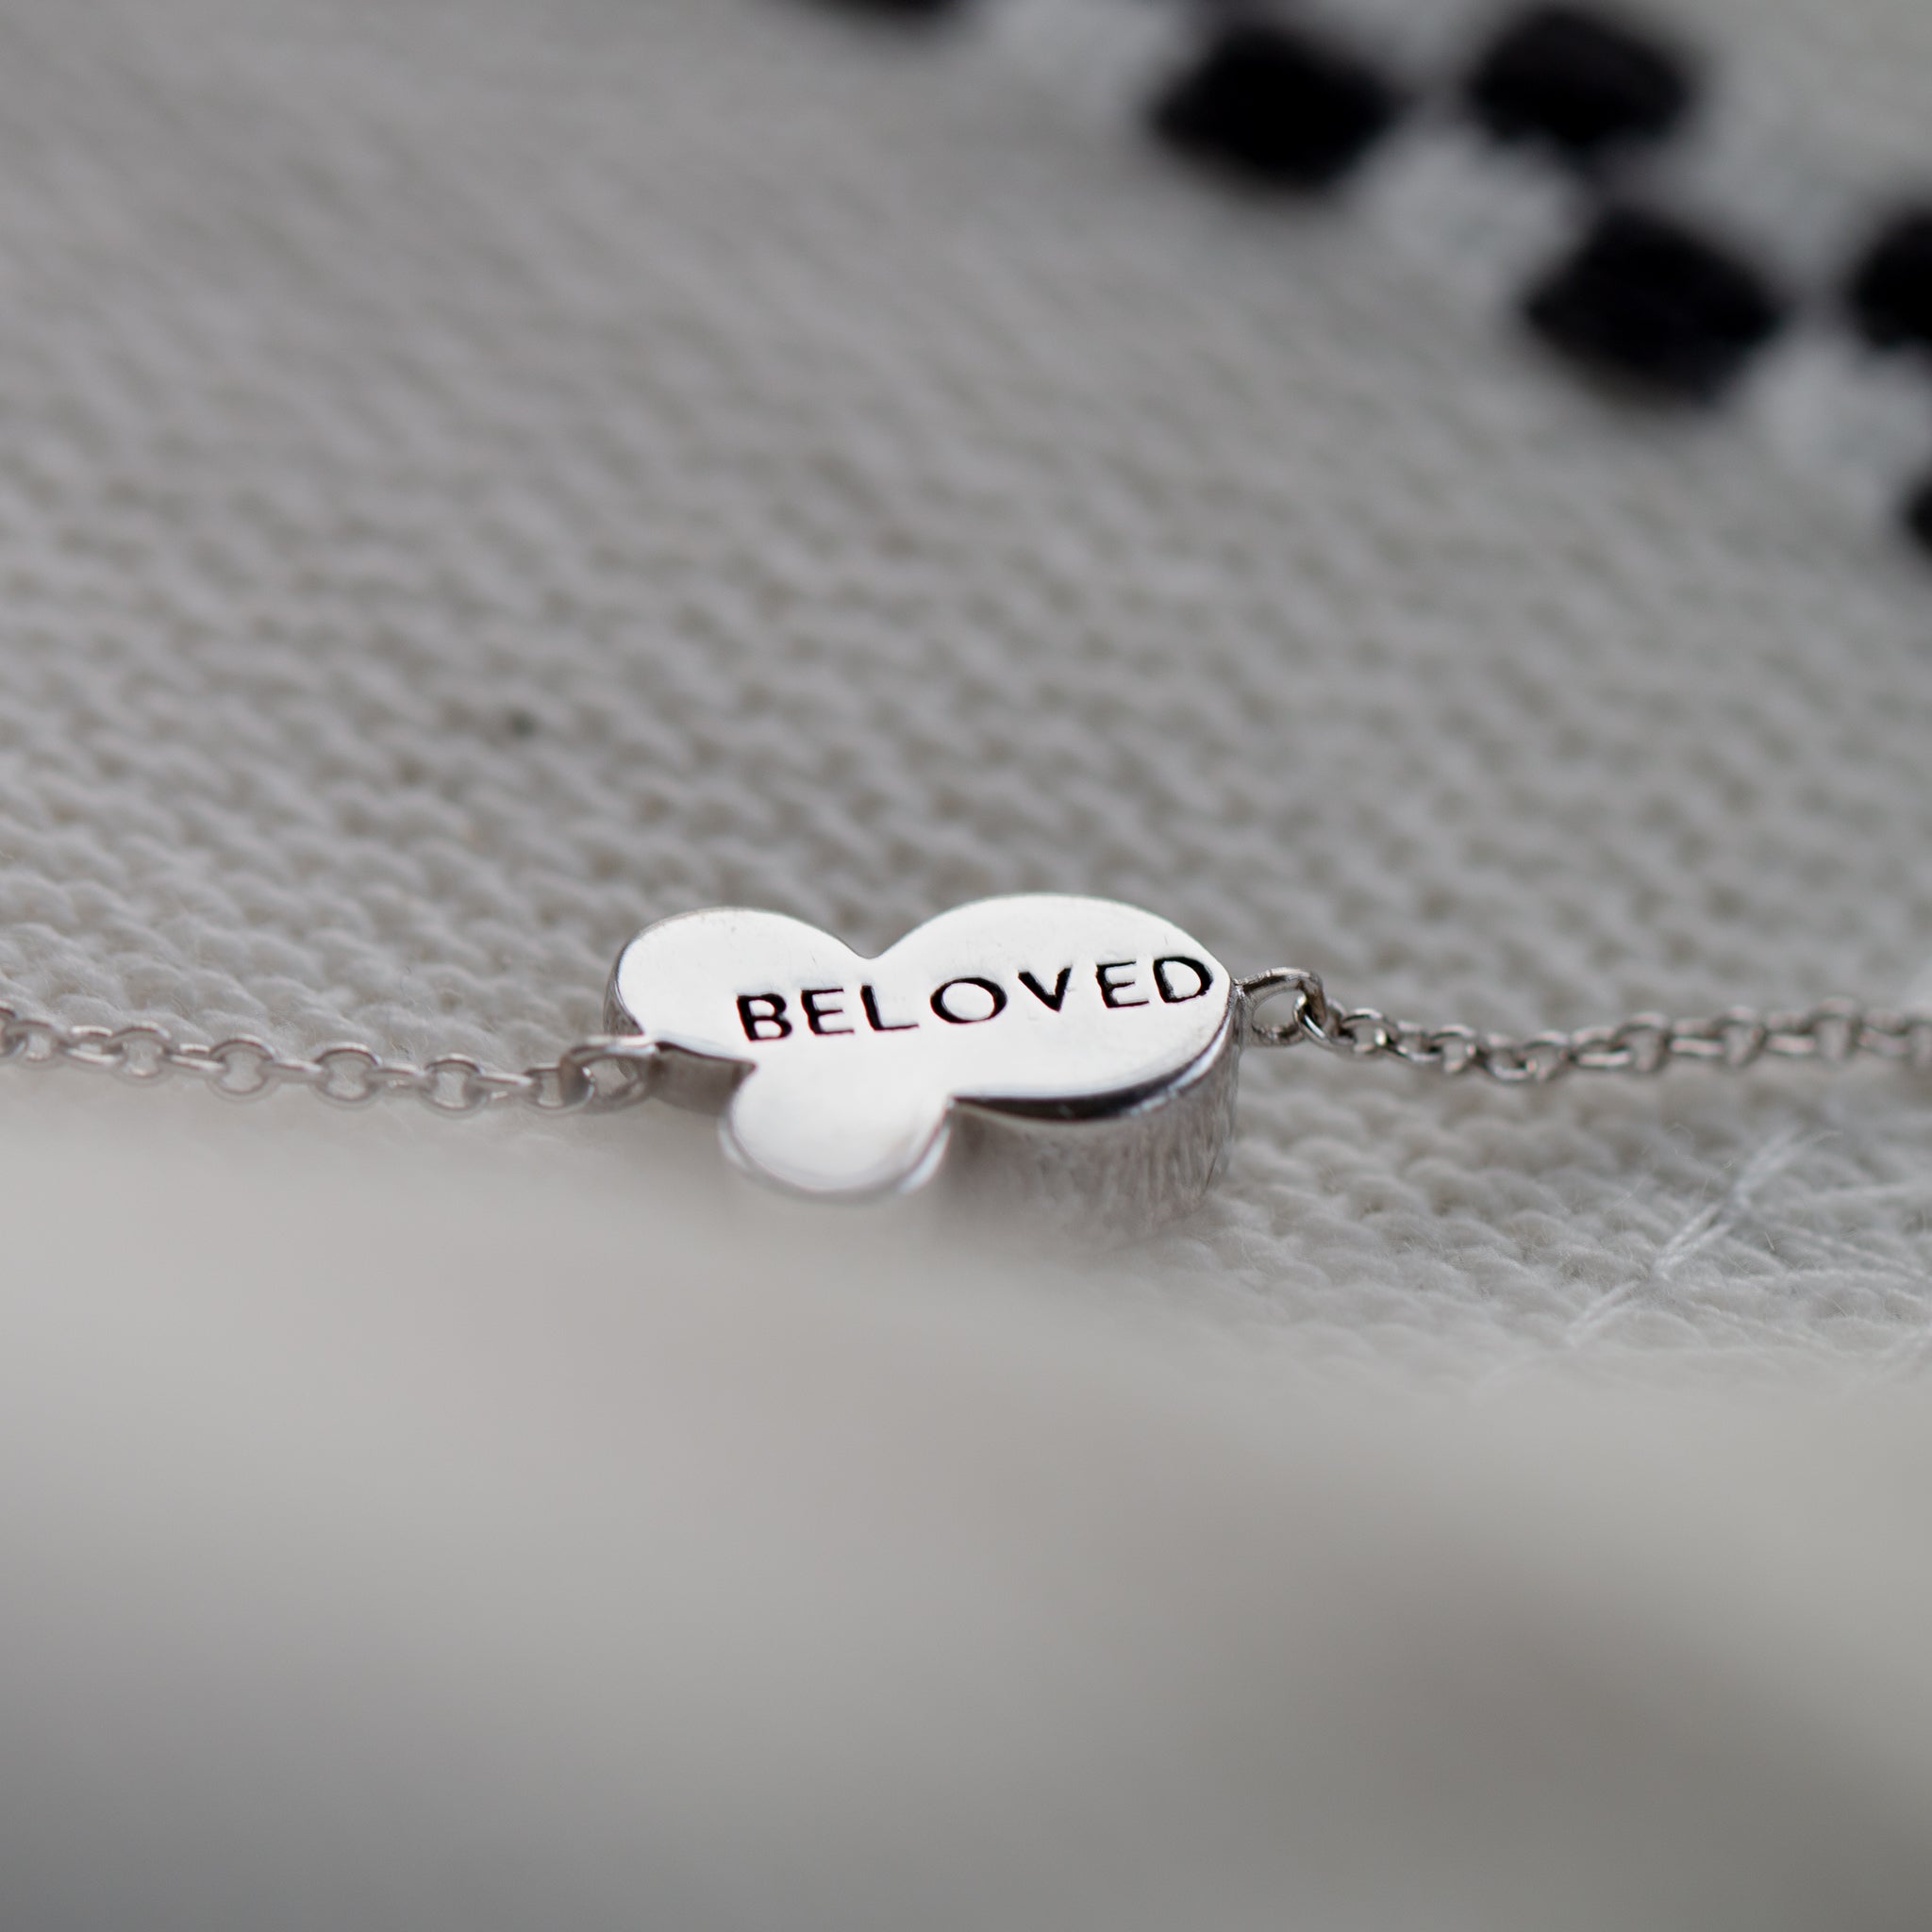 Beloved Bracelet - Seek+Find